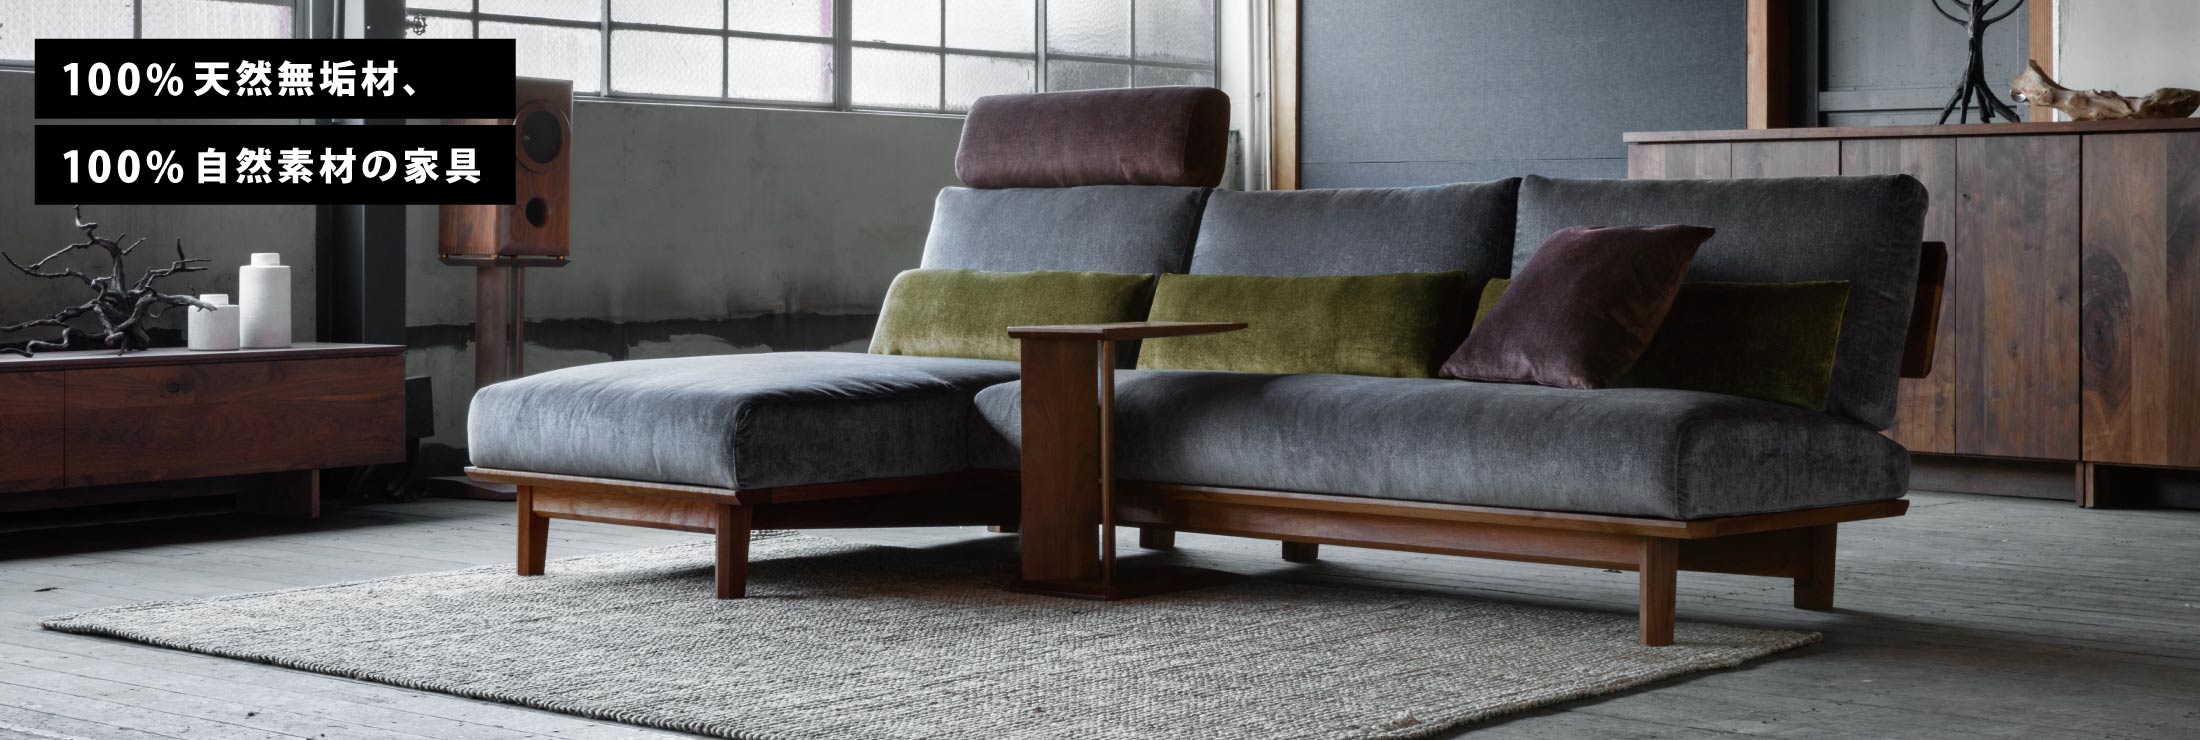 SOLIDで大人気の無垢フレームが美しいカウチソファ。アームレスタイプなので様々なお部屋に合わせやすいソファとなっております。